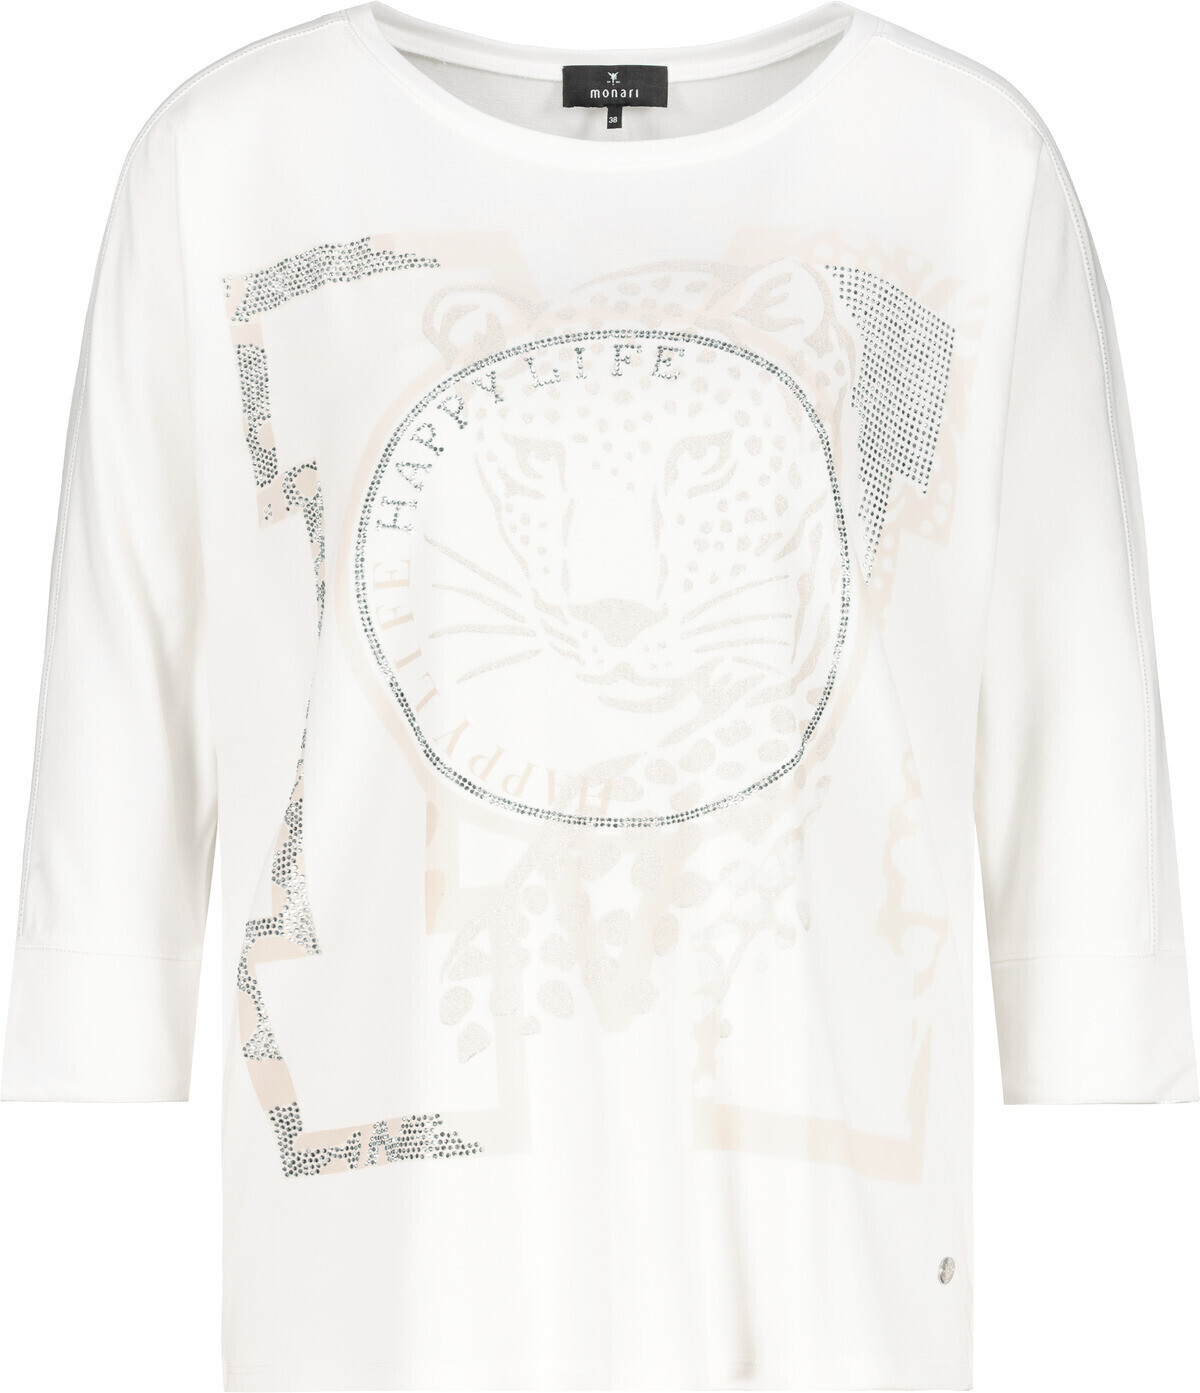 Preisvergleich € Print mit Shirt ab Panther (806970) 49,99 off-white | bei Monari